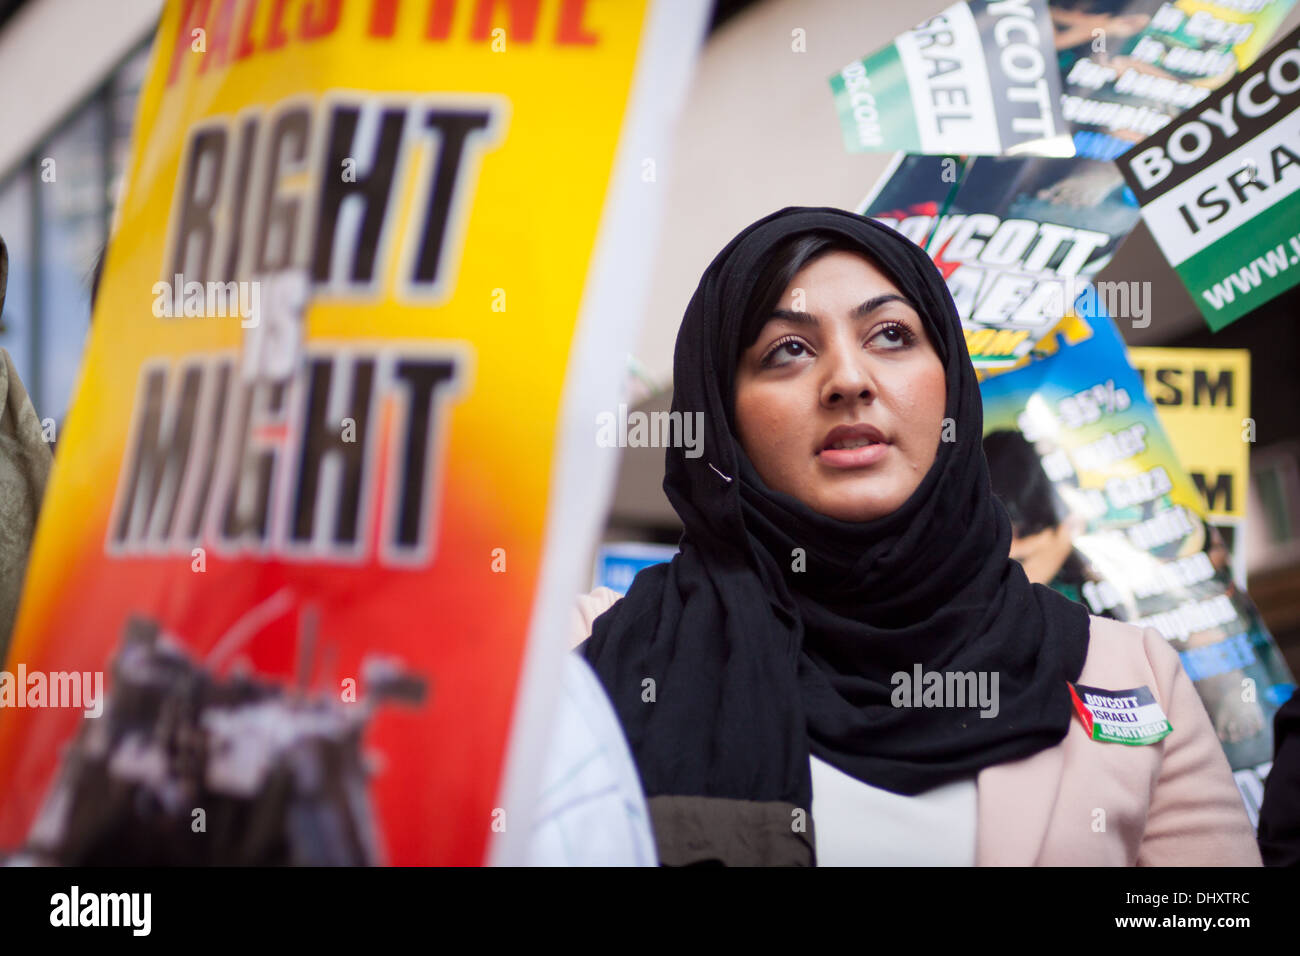 Un élève à la journée Al Qods 2013 Démonstration, Londres. Journée d'Al Qods est un pro-Palestiniens journée de protestation. Banque D'Images